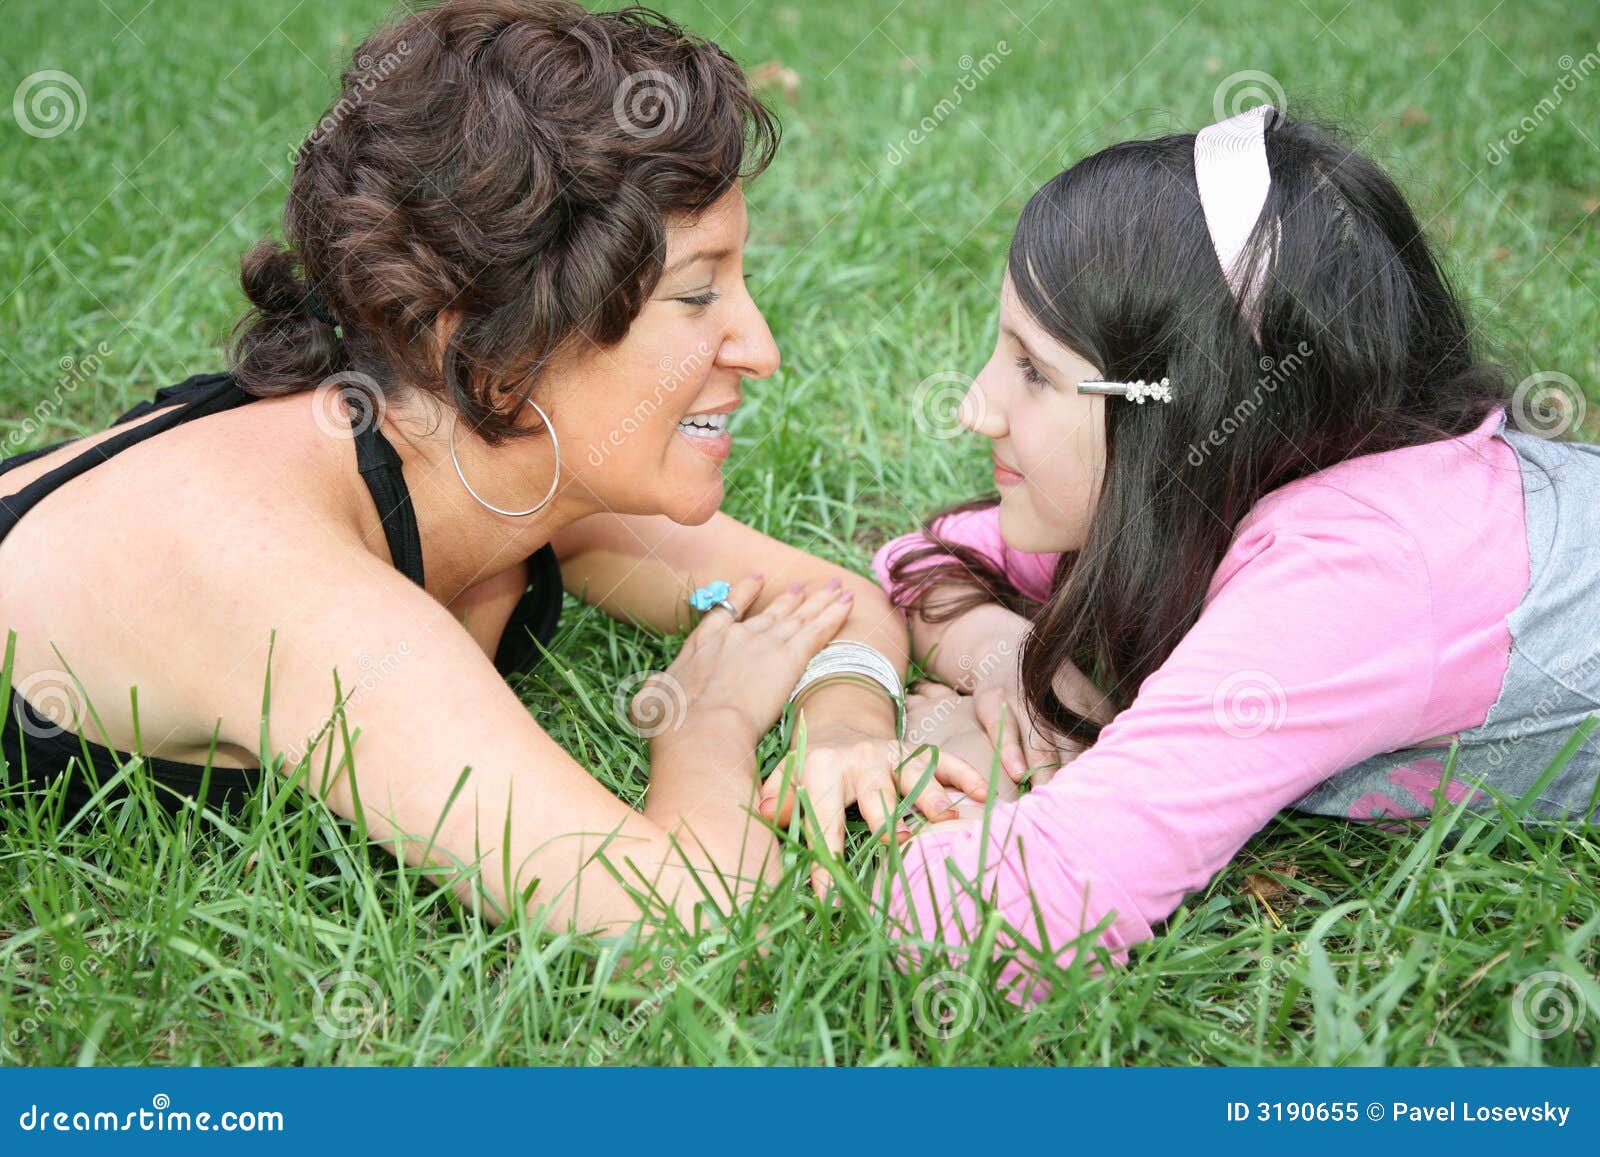 Лесбиянки мама папа. Мать и дочь на траве. Дочка лежит на маме. Мама и дочка лесбиянство. Фотосессия мама и дочь лизбиянка.